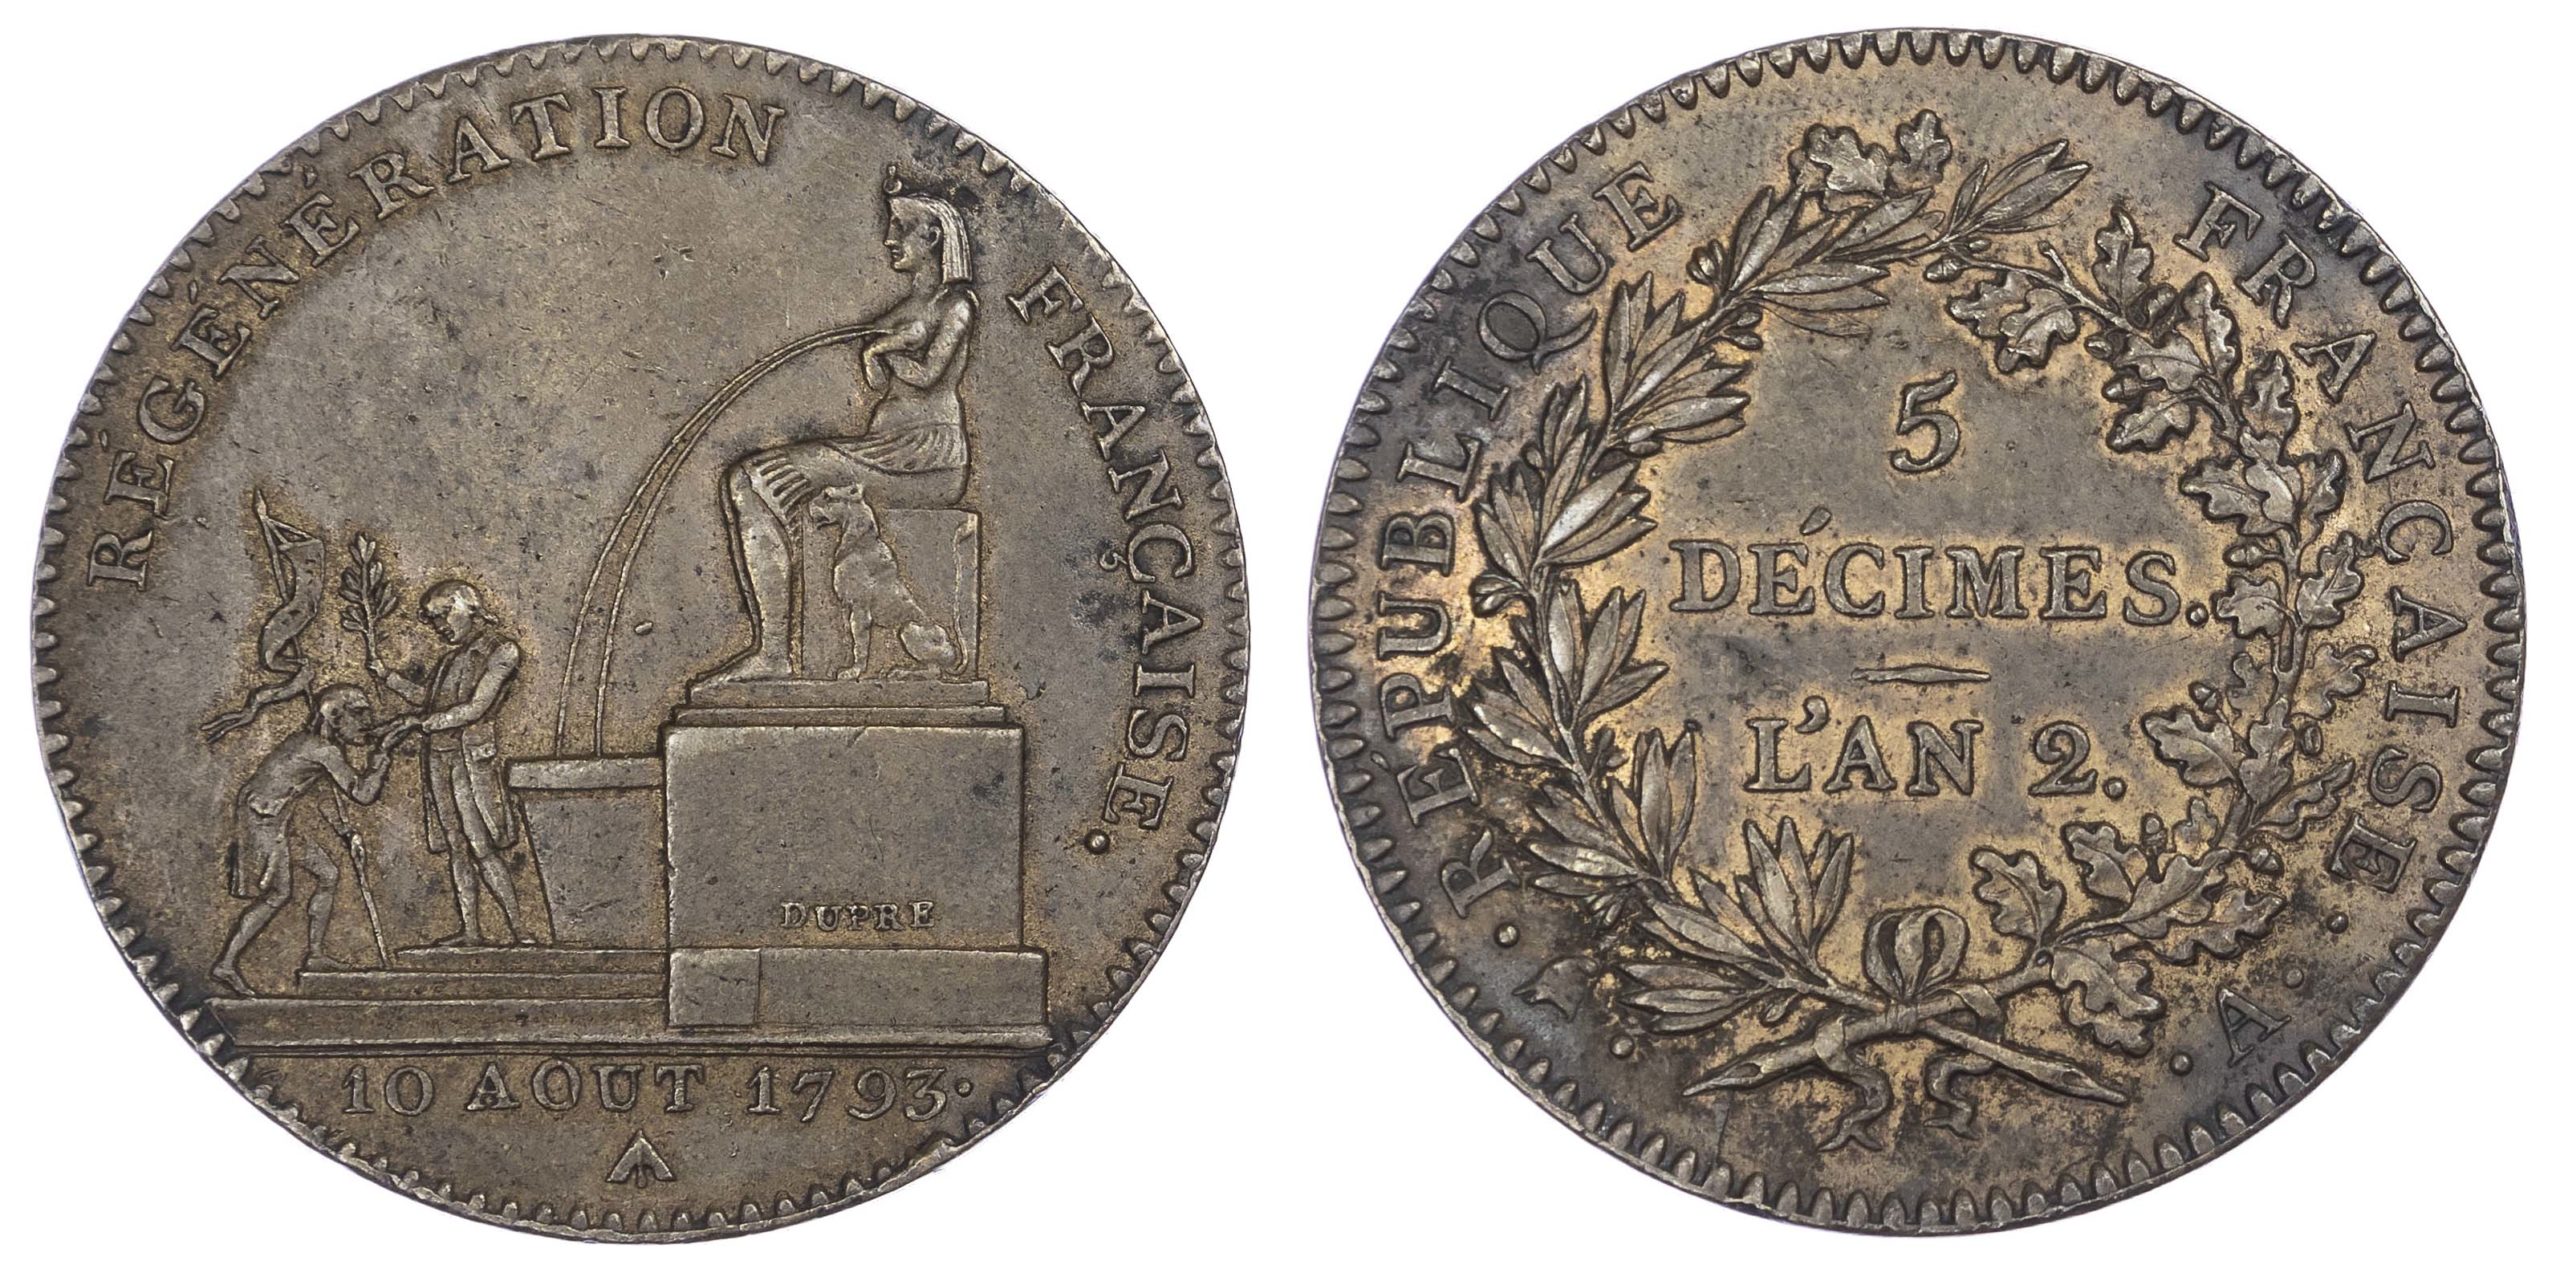 France, Republic (1792-1795 AD), Convention, bronze 5 Decimes, L'An 2, 1793, Paris